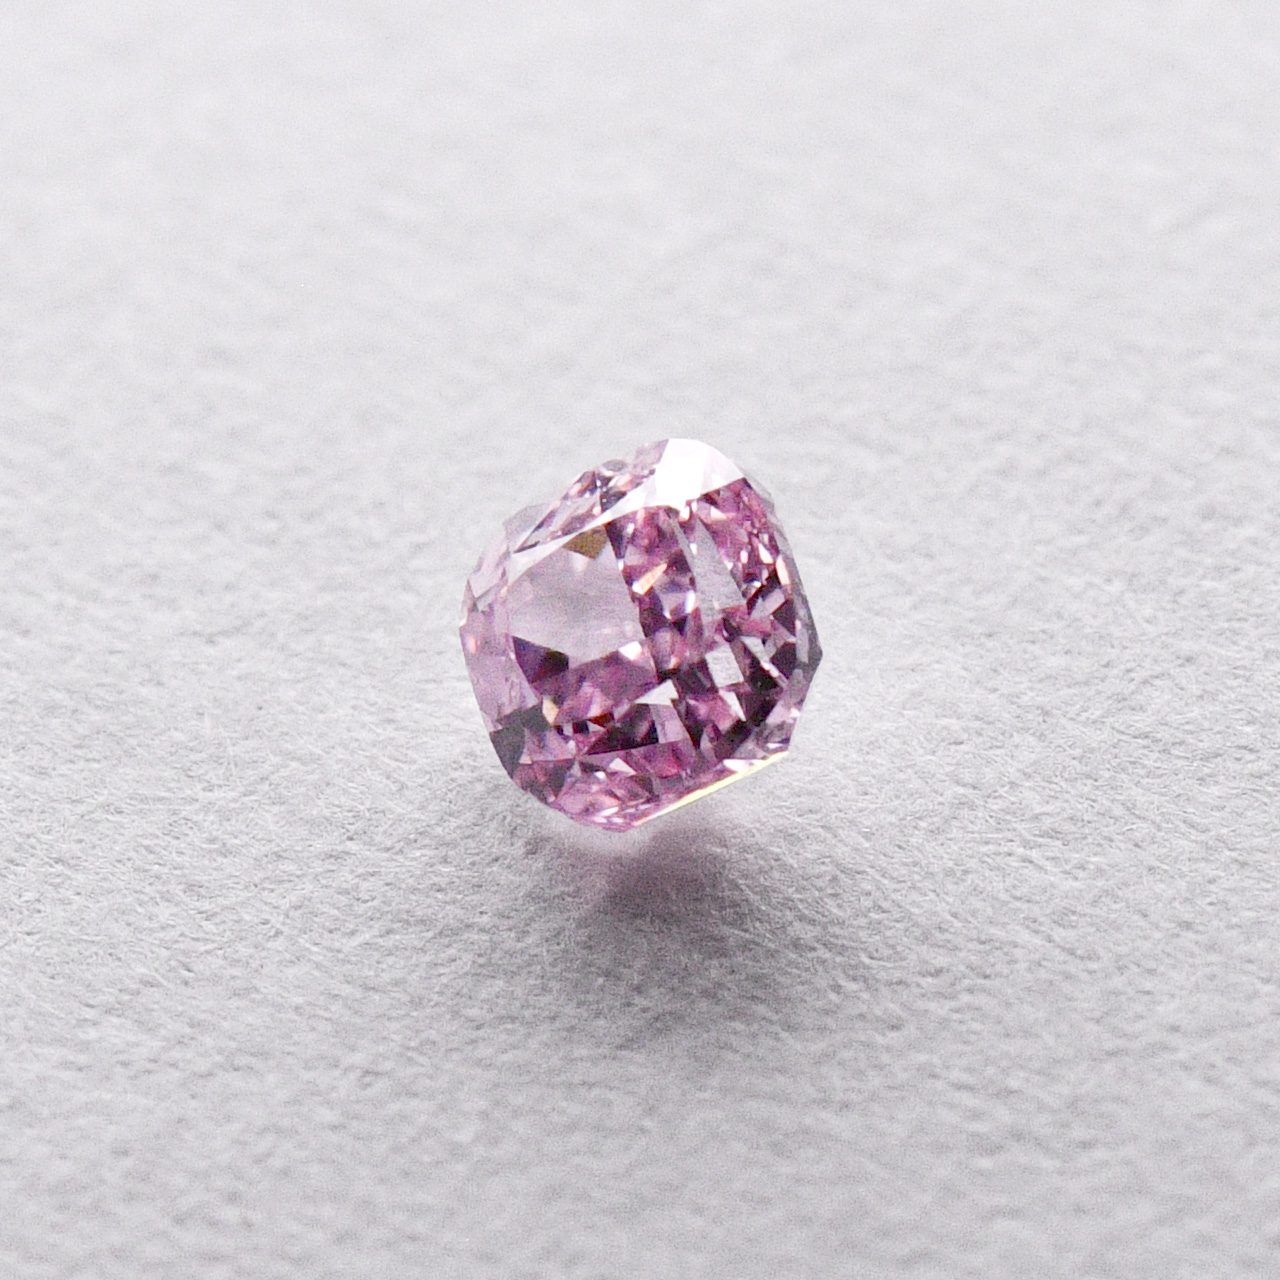 最初の 感動ファンシーインテンスピンク SI-1 ダイヤモンド2石 燦めきループ 惹かれあう美の引力 Fancy Intense Pink  Ptピンクダイヤモンド0.088ct ダイヤモンド0.09ct D 0.32ct リング